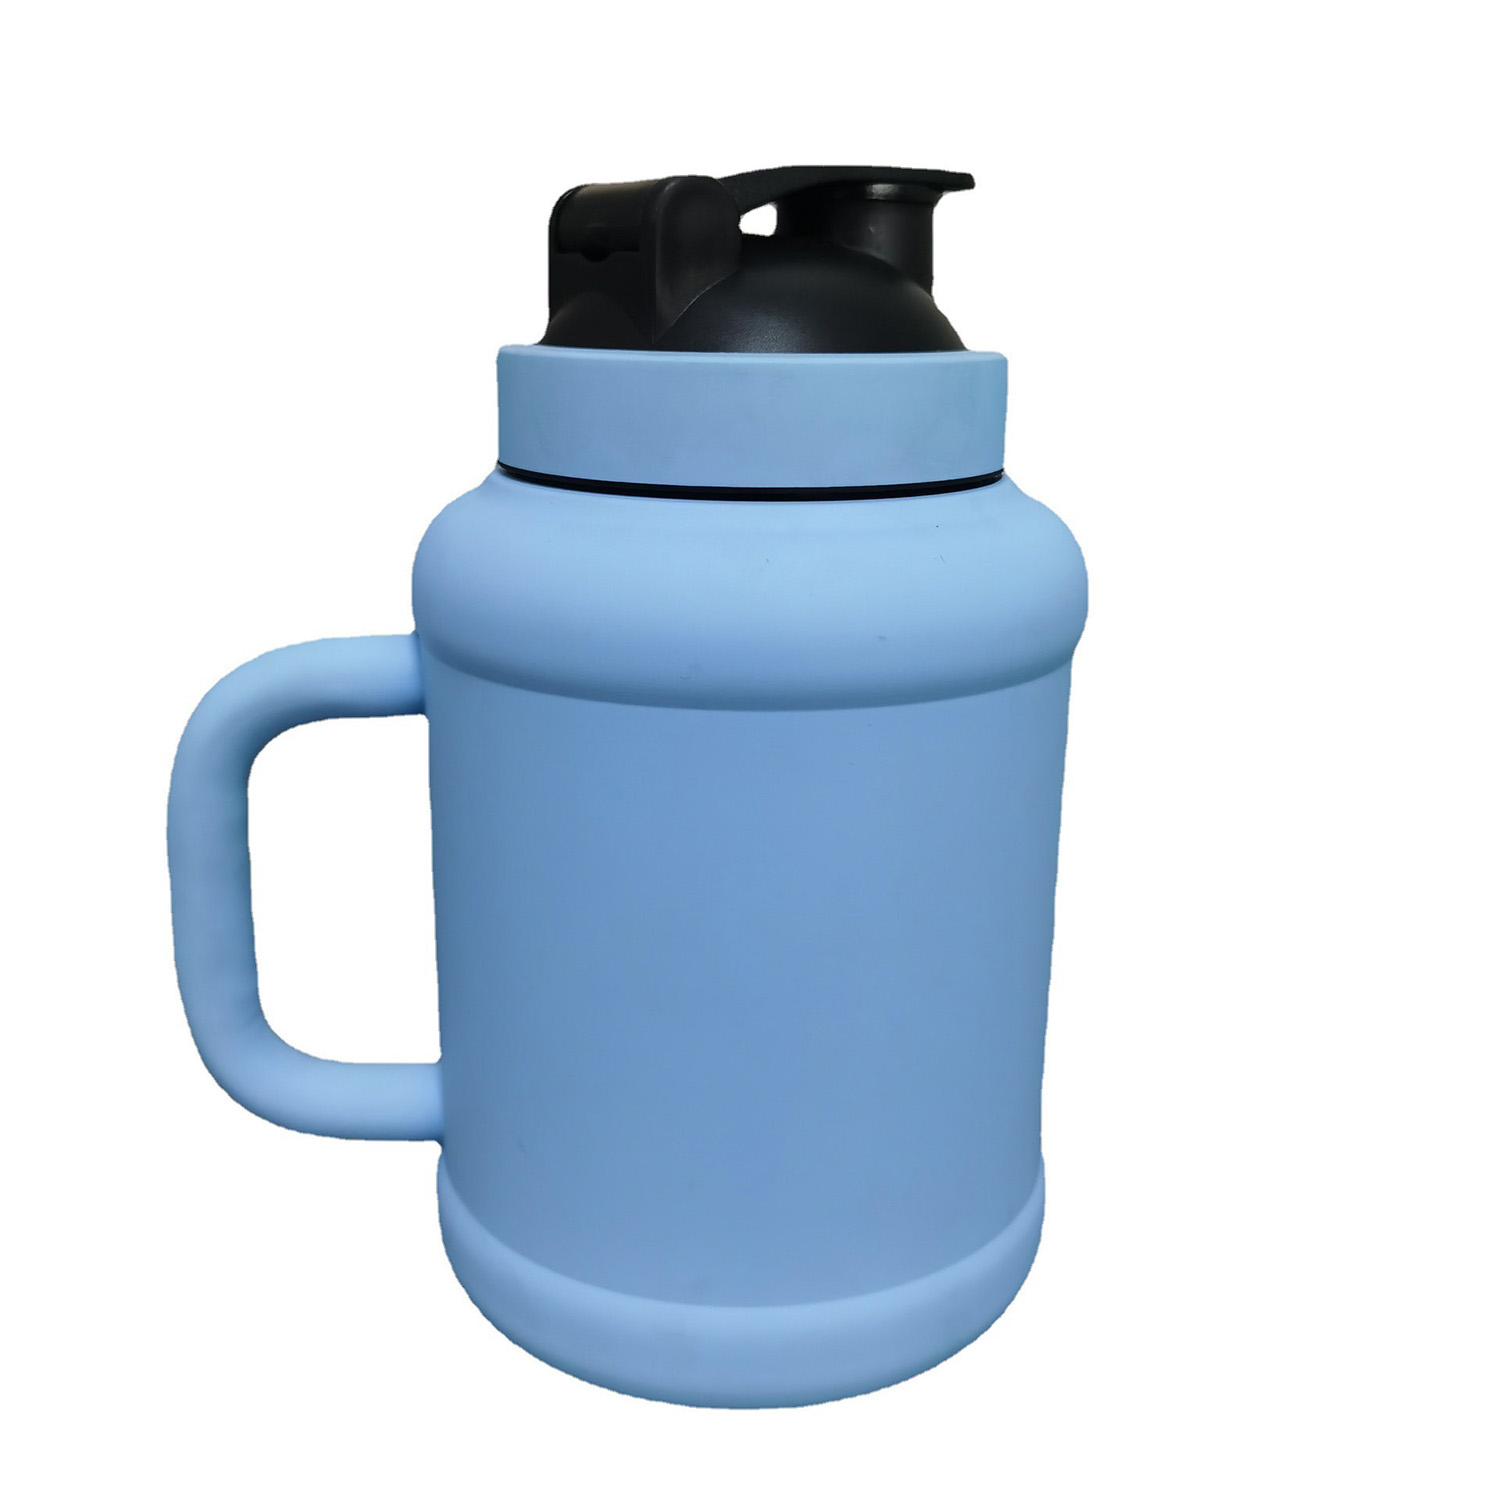 https://www.waterbottle.tech/wp-content/uploads/2022/03/Water-Jug-1.5L-2.5L-Big-Water-Bottle-50OZ-85oz-Sports-Gallon-Capacity-s11150051-2.jpg